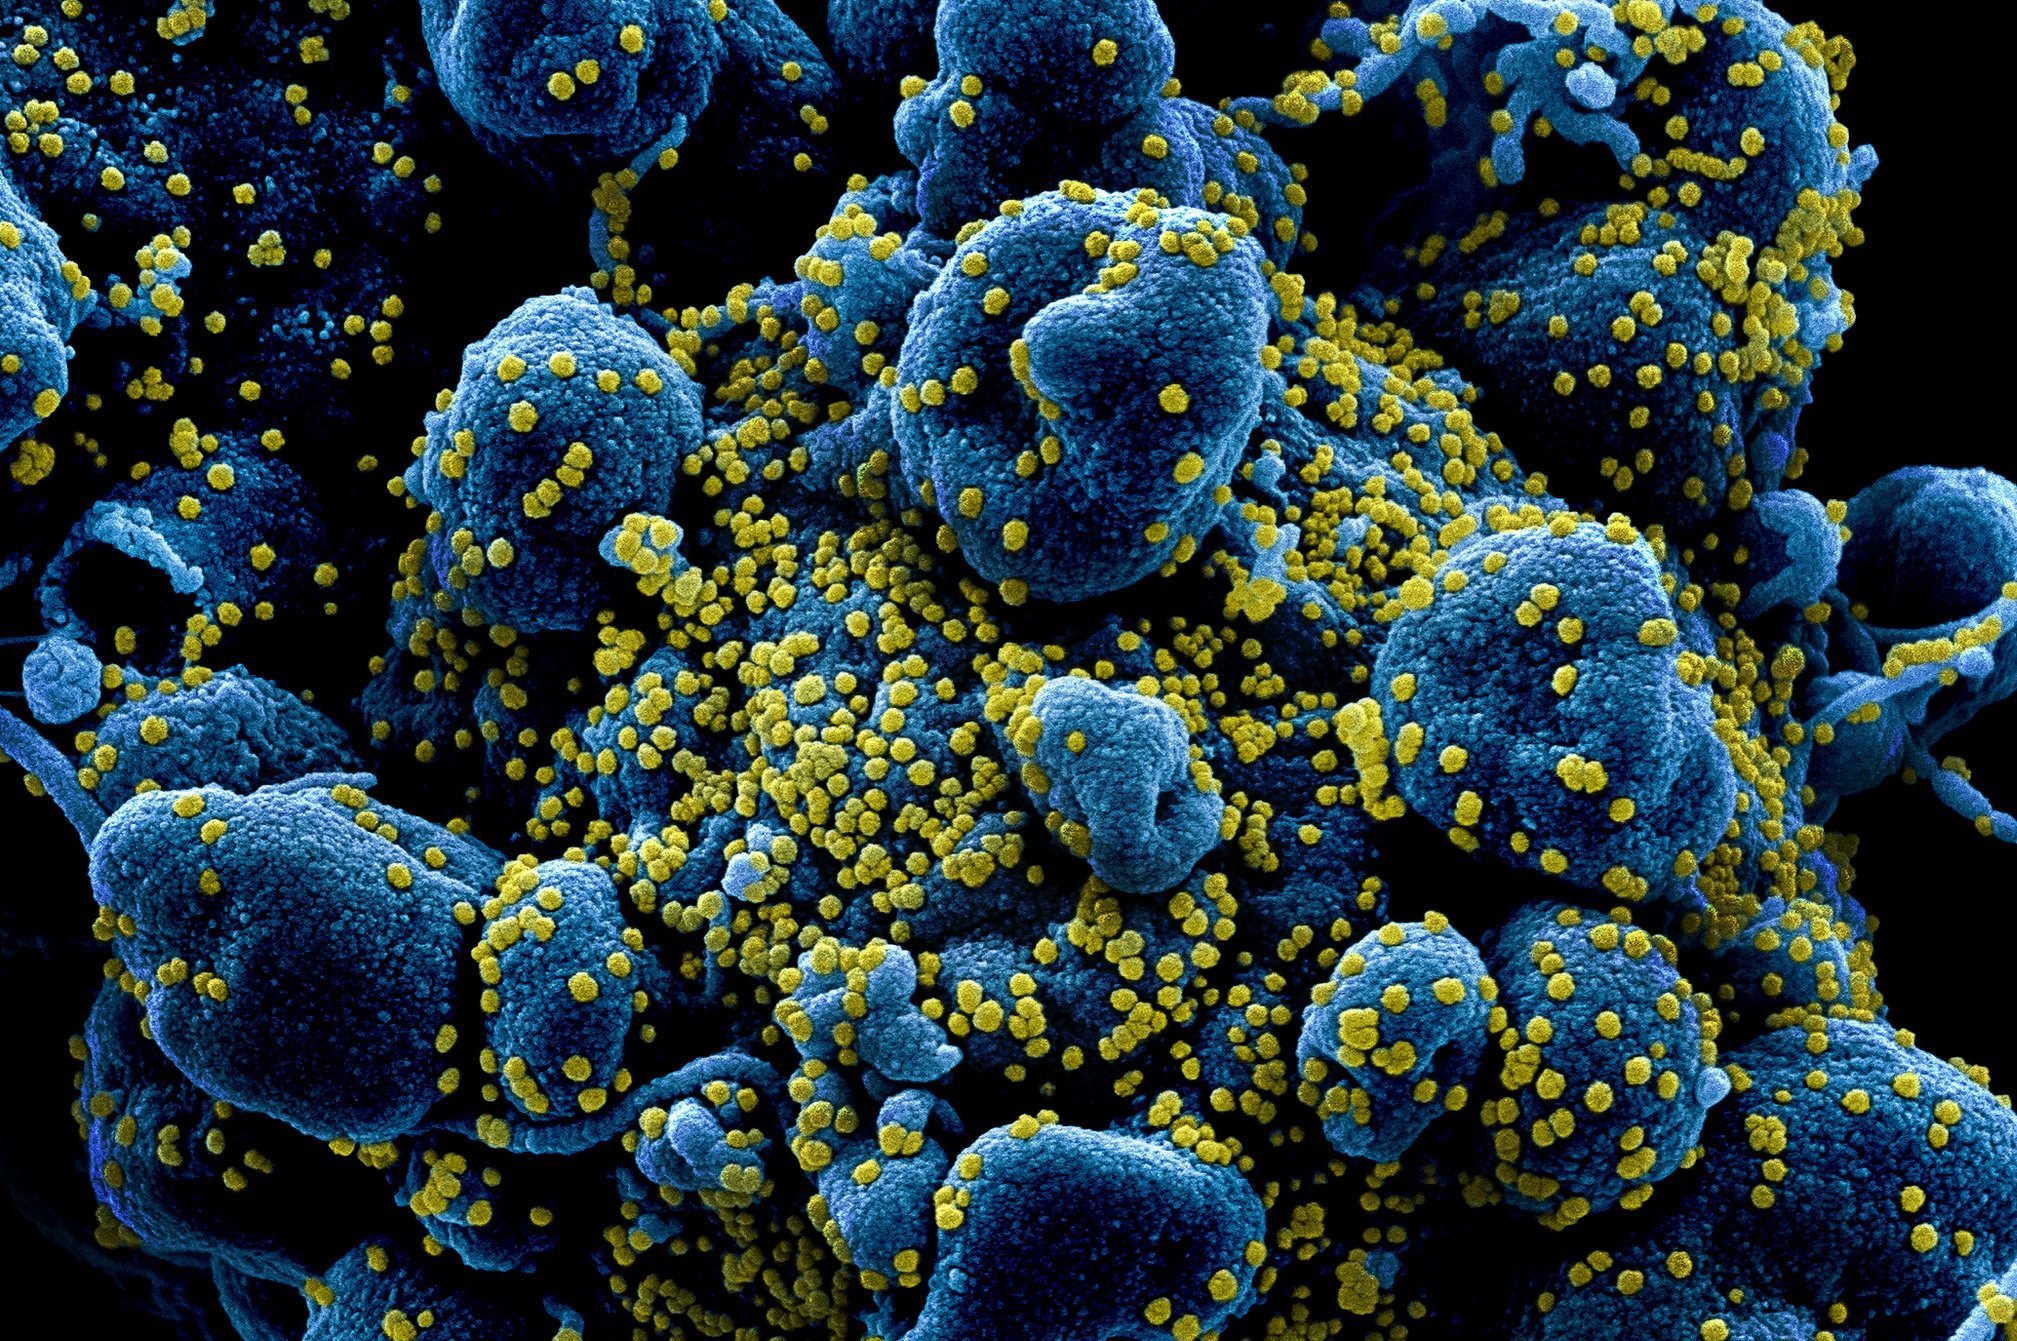 Imagens mostram coronavírus atacando células humanas | Exame